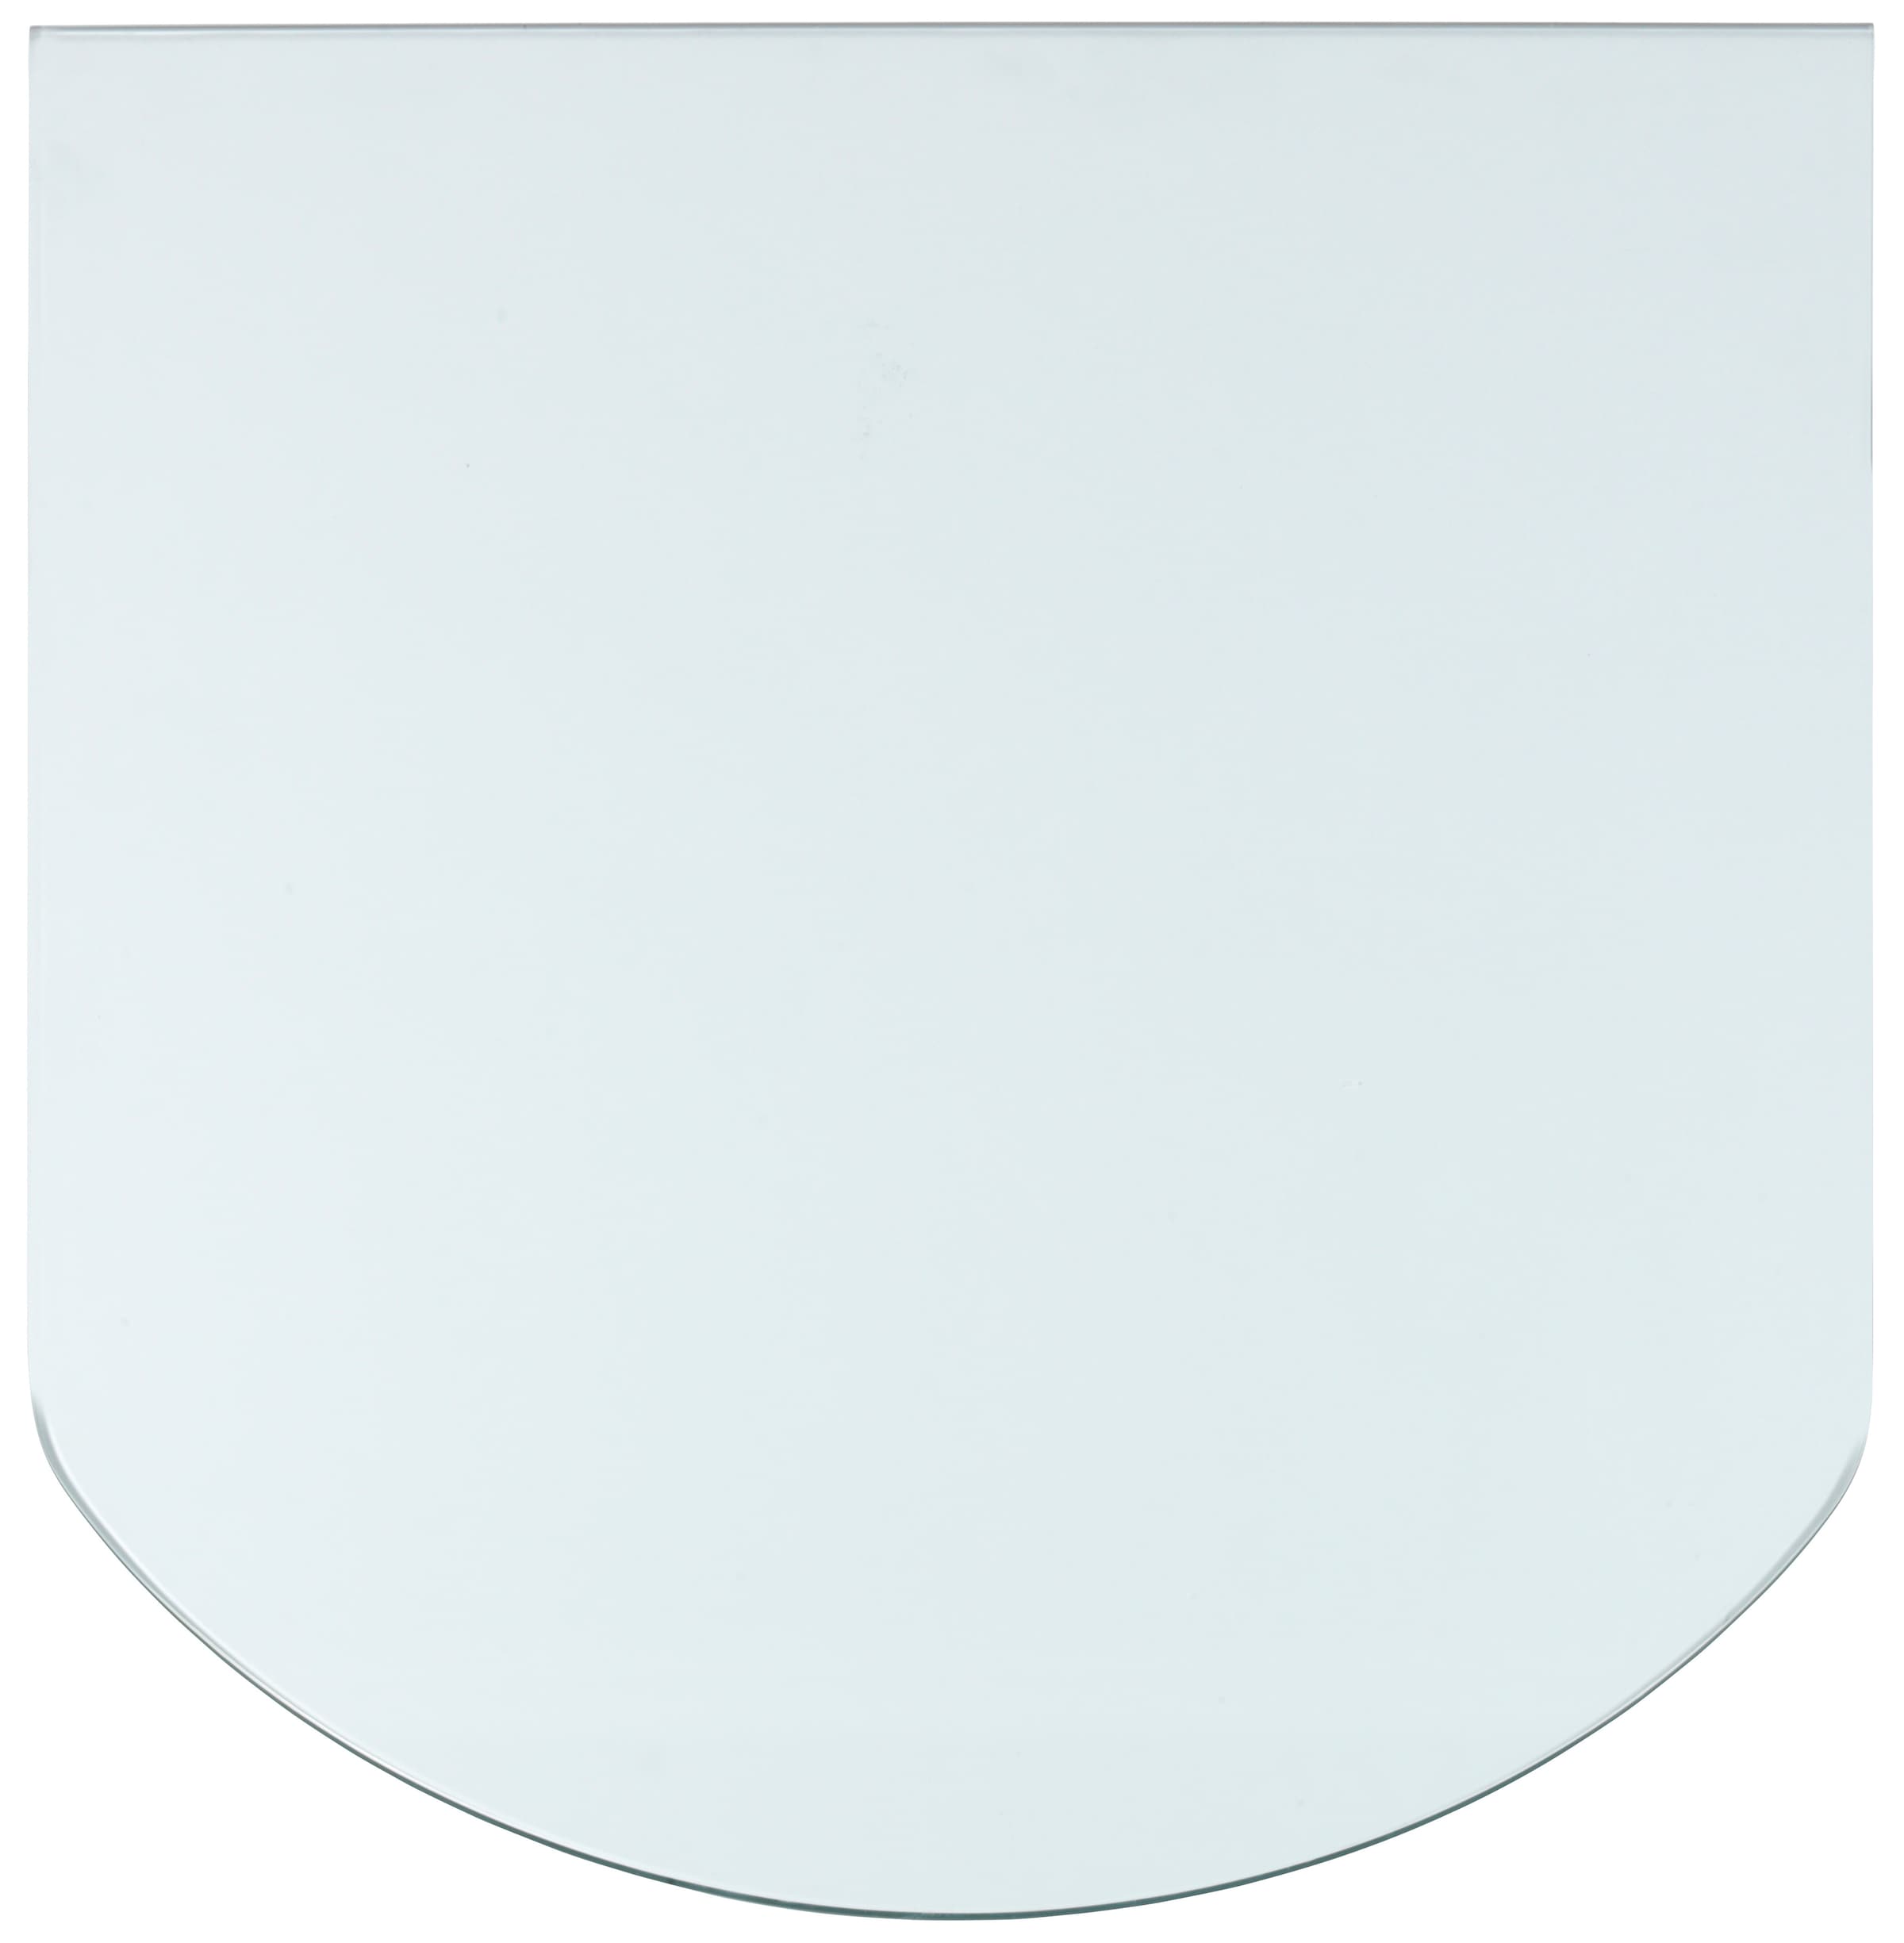 Heathus Bodenschutzplatte, halbrund, 85 x 110 cm, 8mm Stärke, transparent, Funkenschutz für Öfen